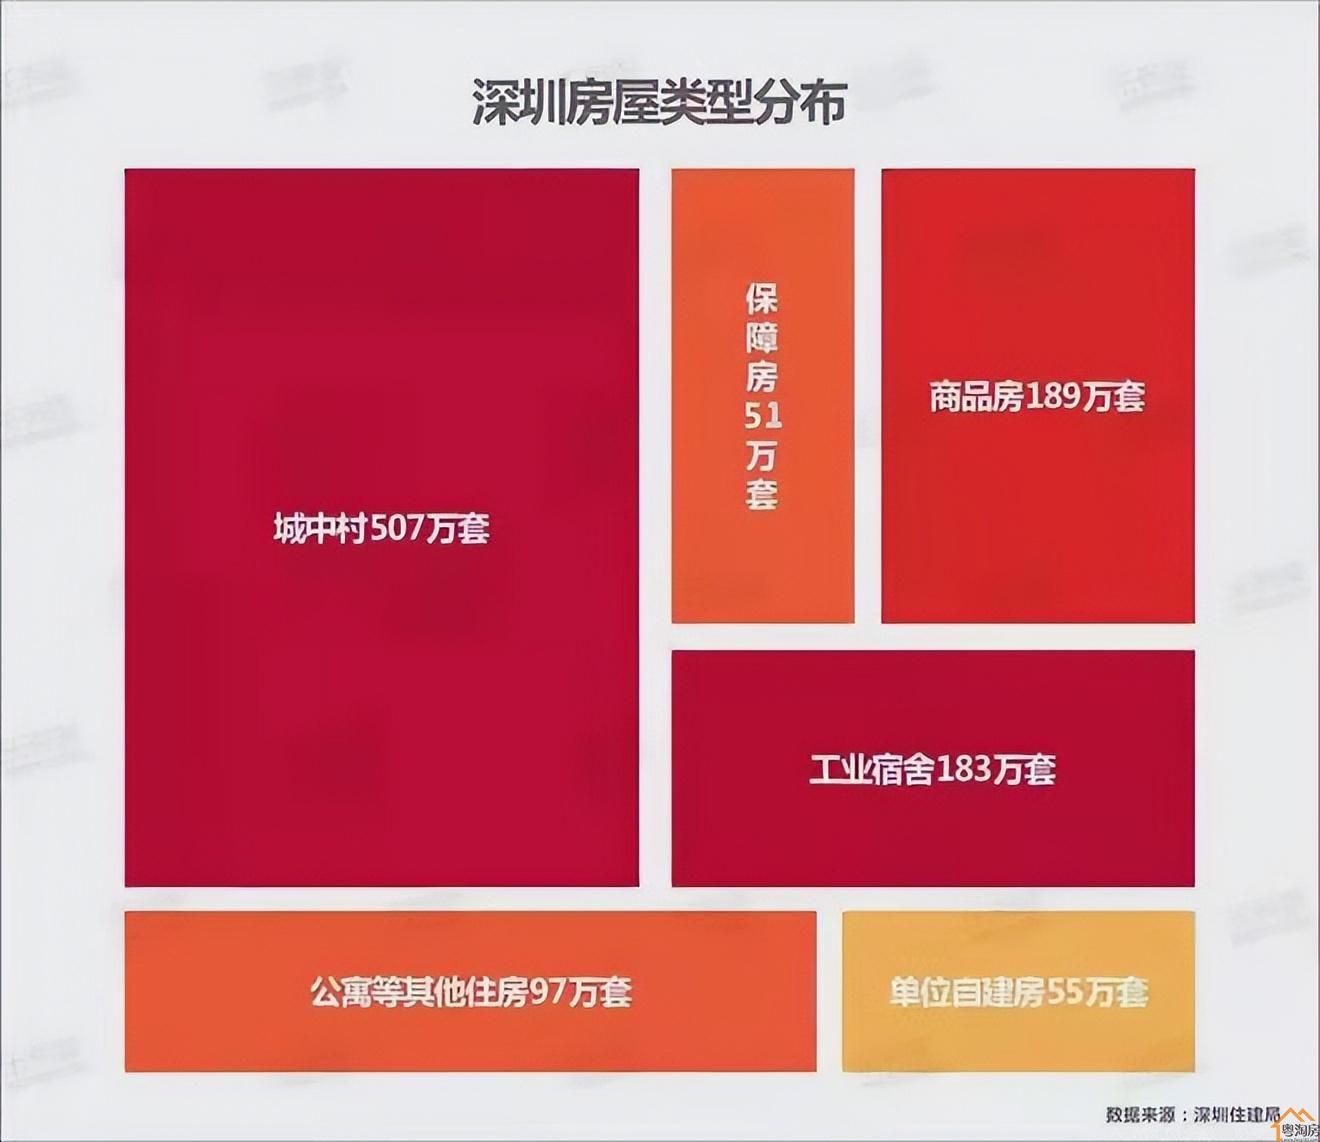 13年翻24倍，深圳小产权房身价的狂飙之路(图2)